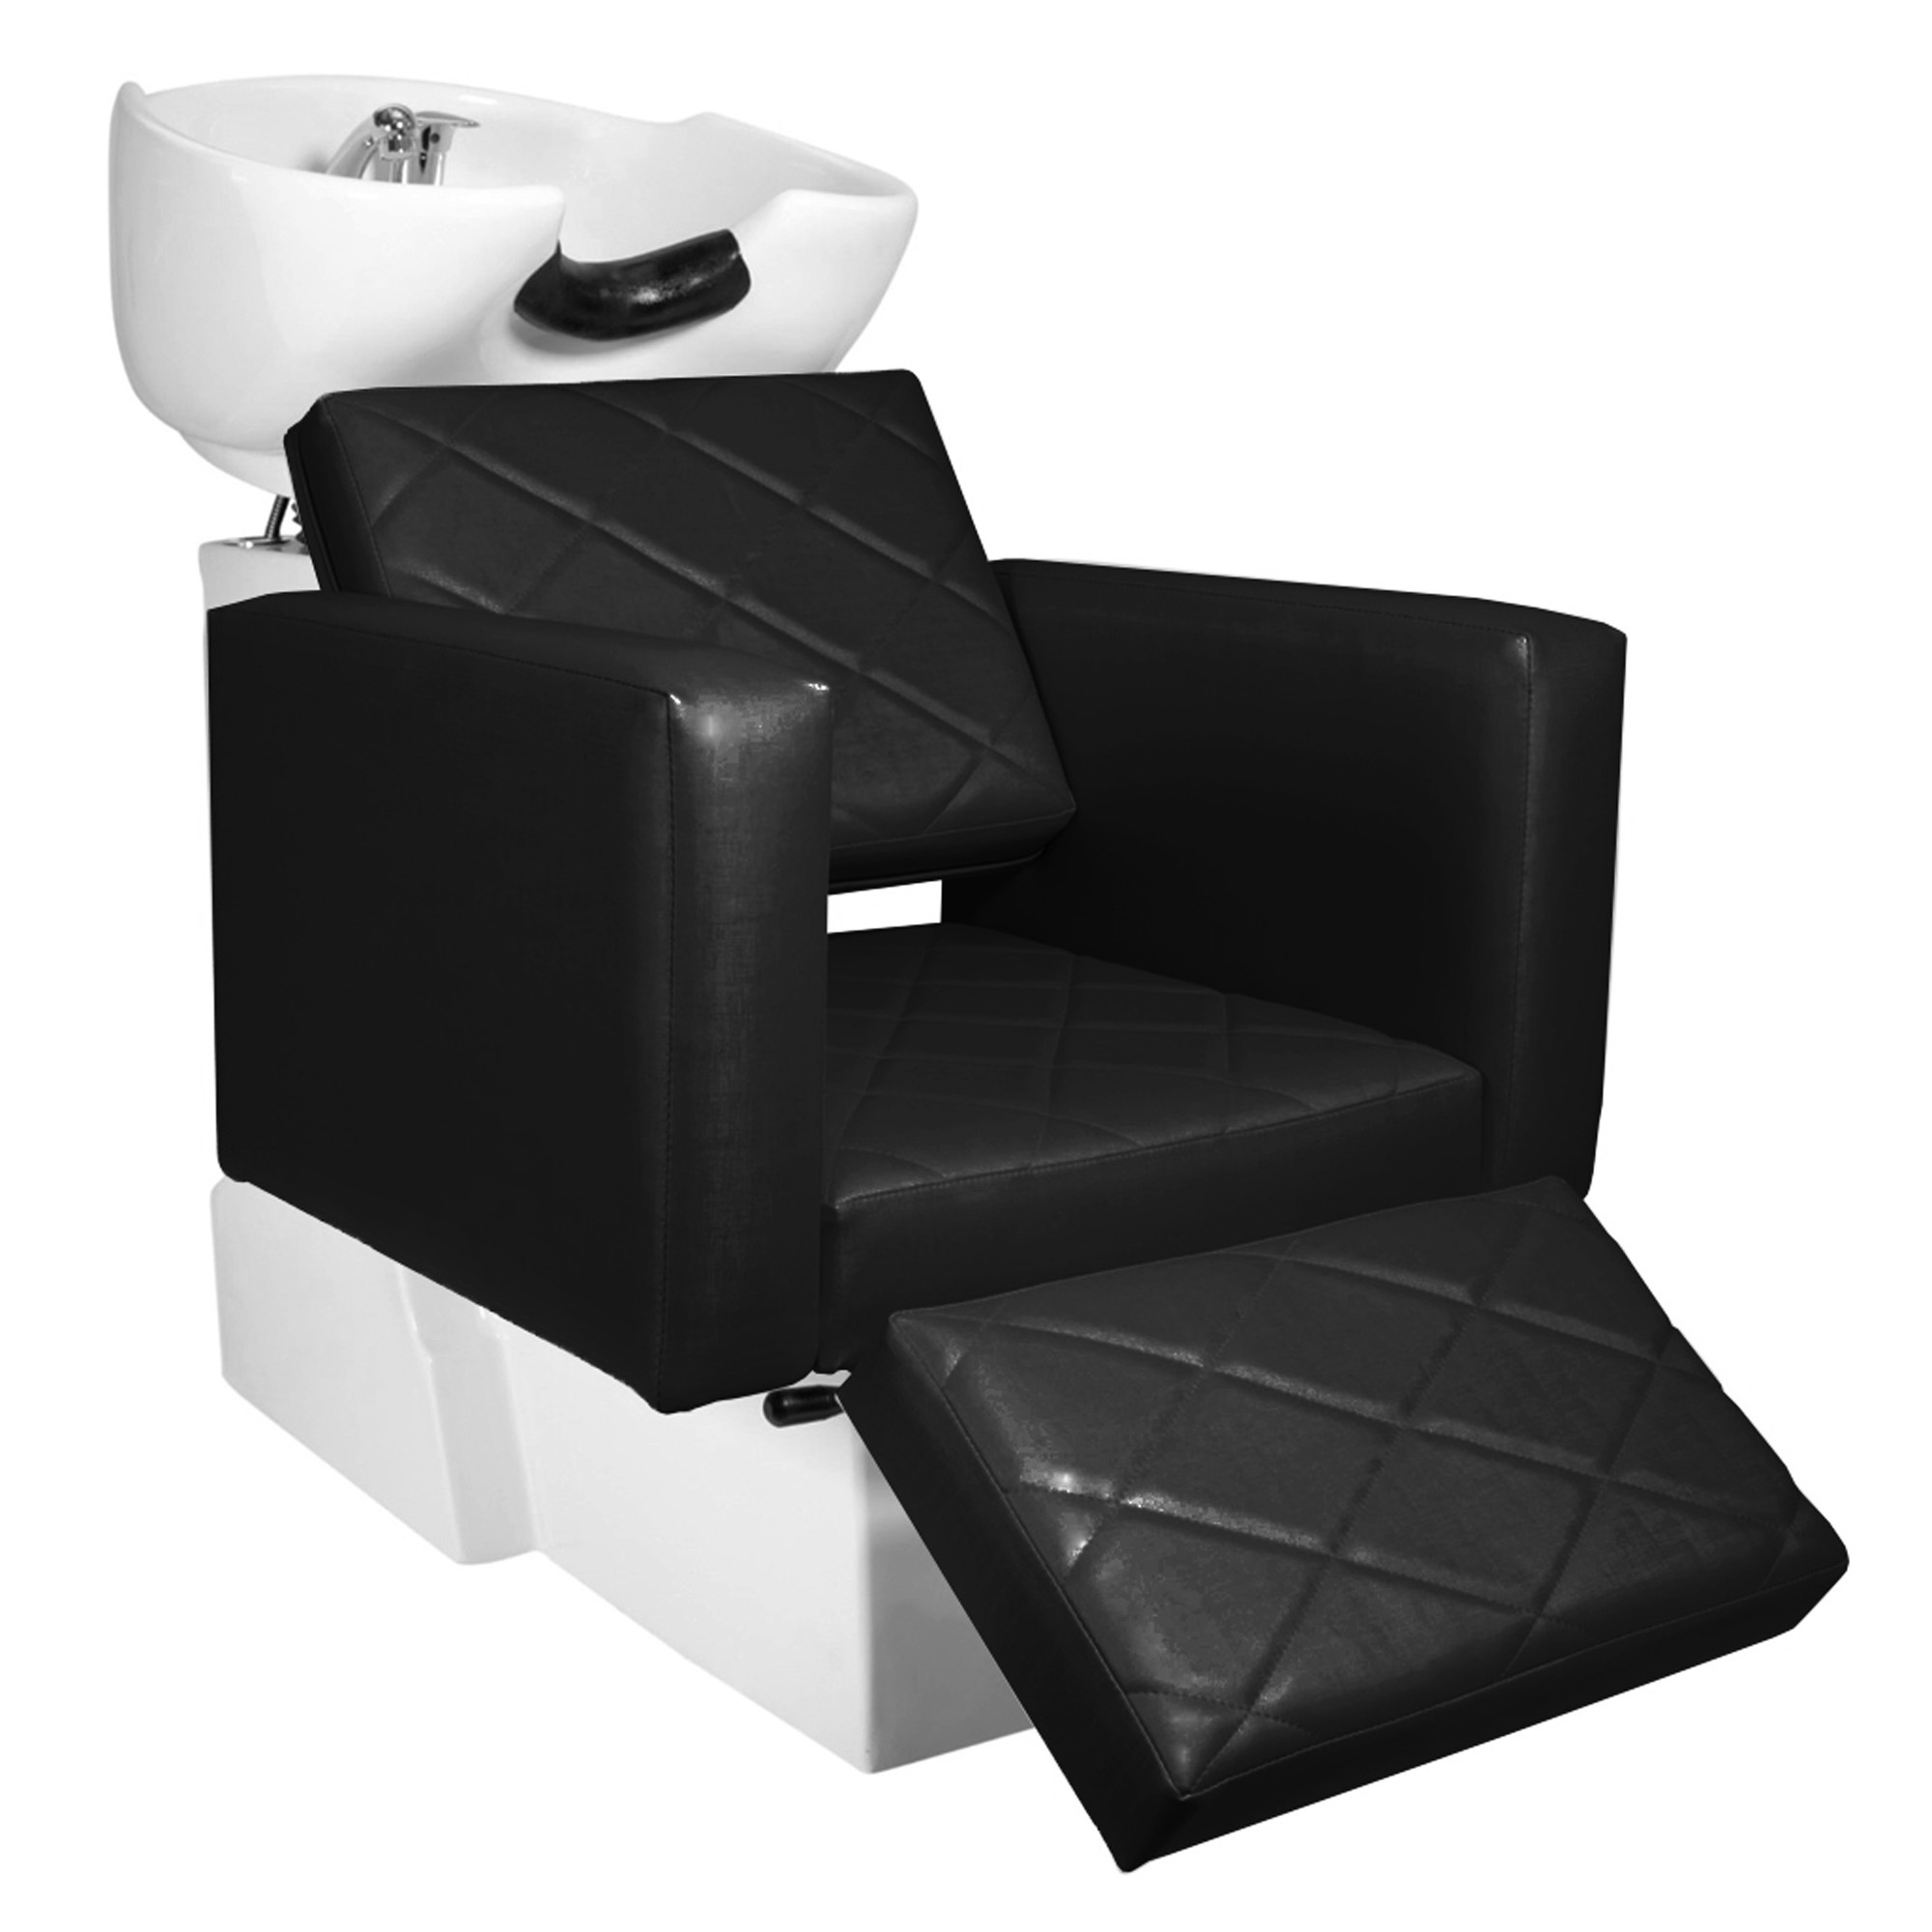 KIT Evidence - Cadeira Fixa + Cadeira Reclinável Descanso + Lavatório Descanso - Base Quadrada - Foto 1